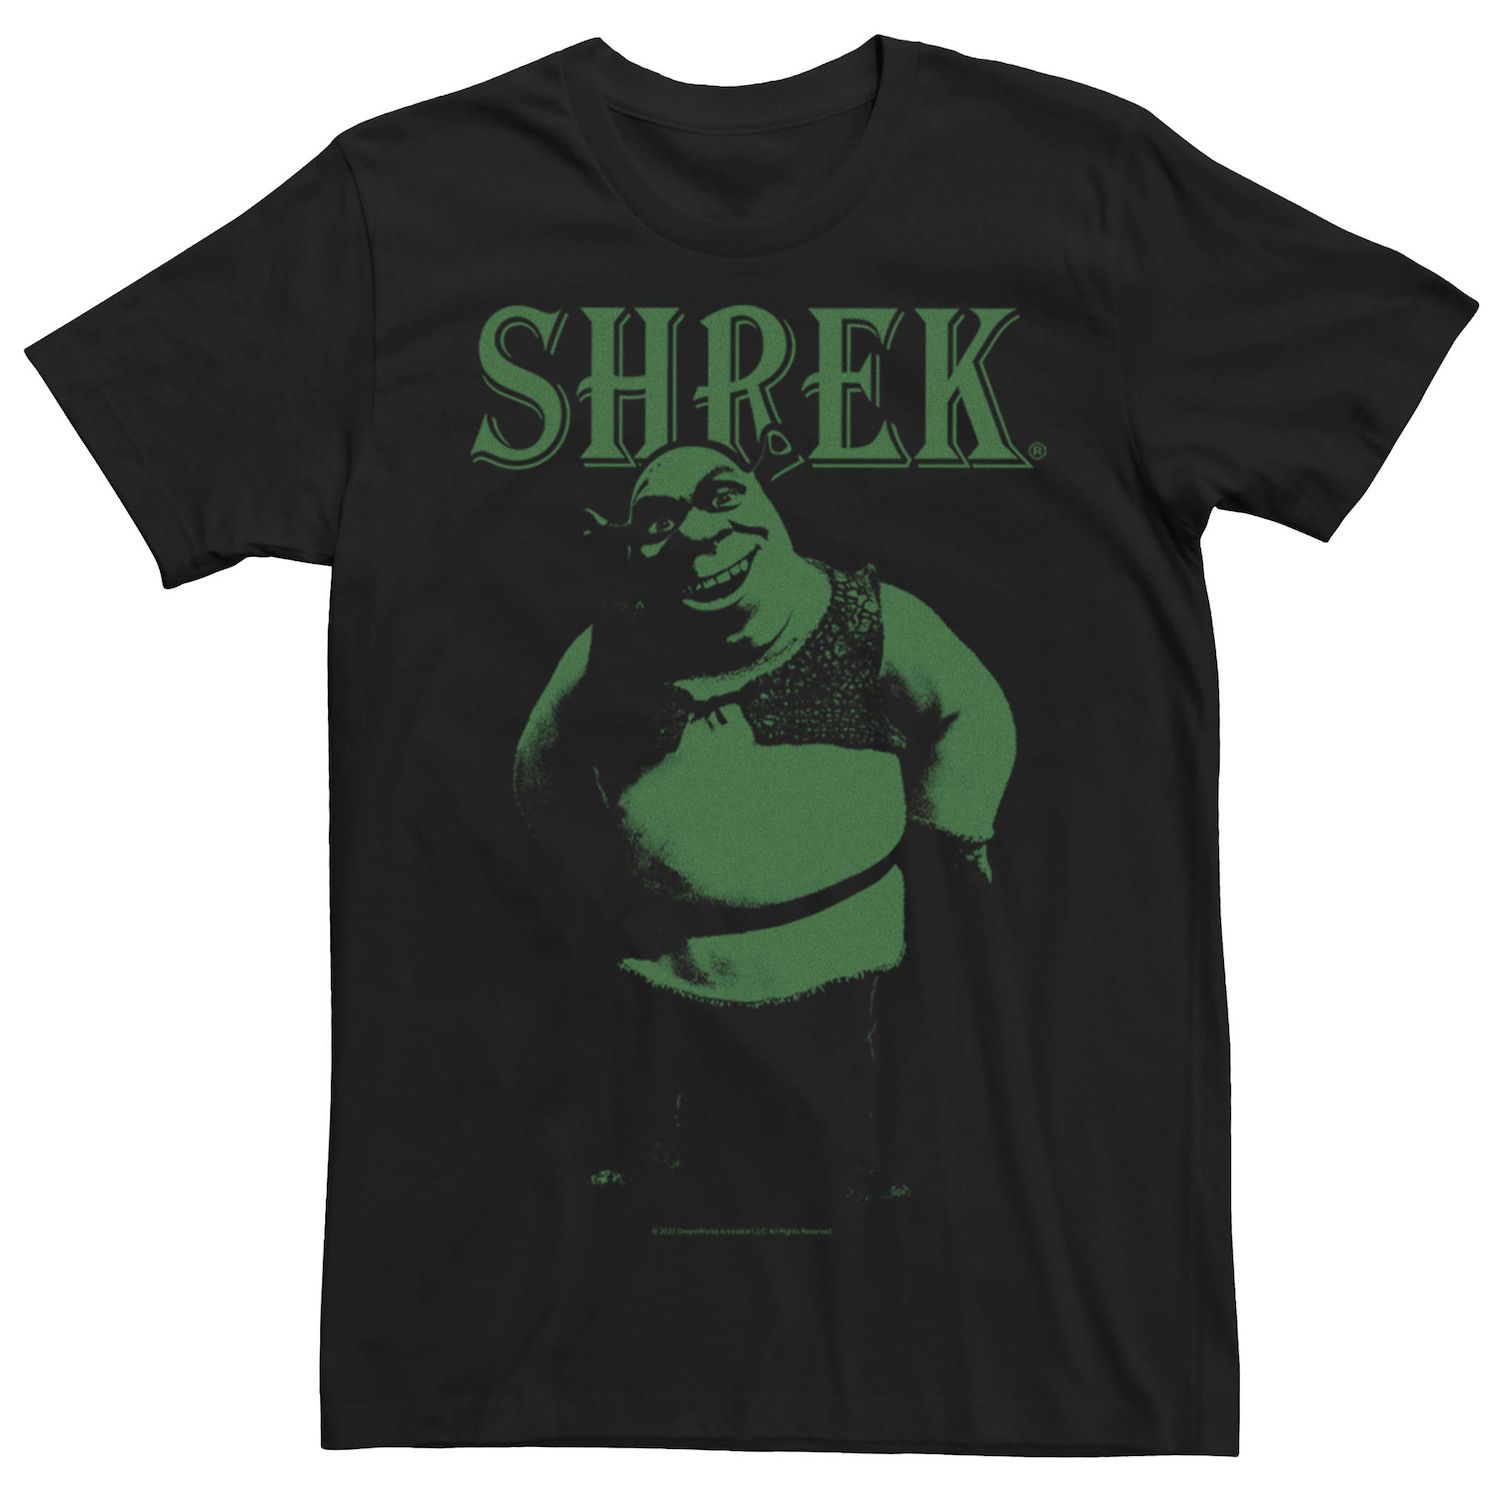 Мужская темная футболка с портретом Шрека Licensed Character